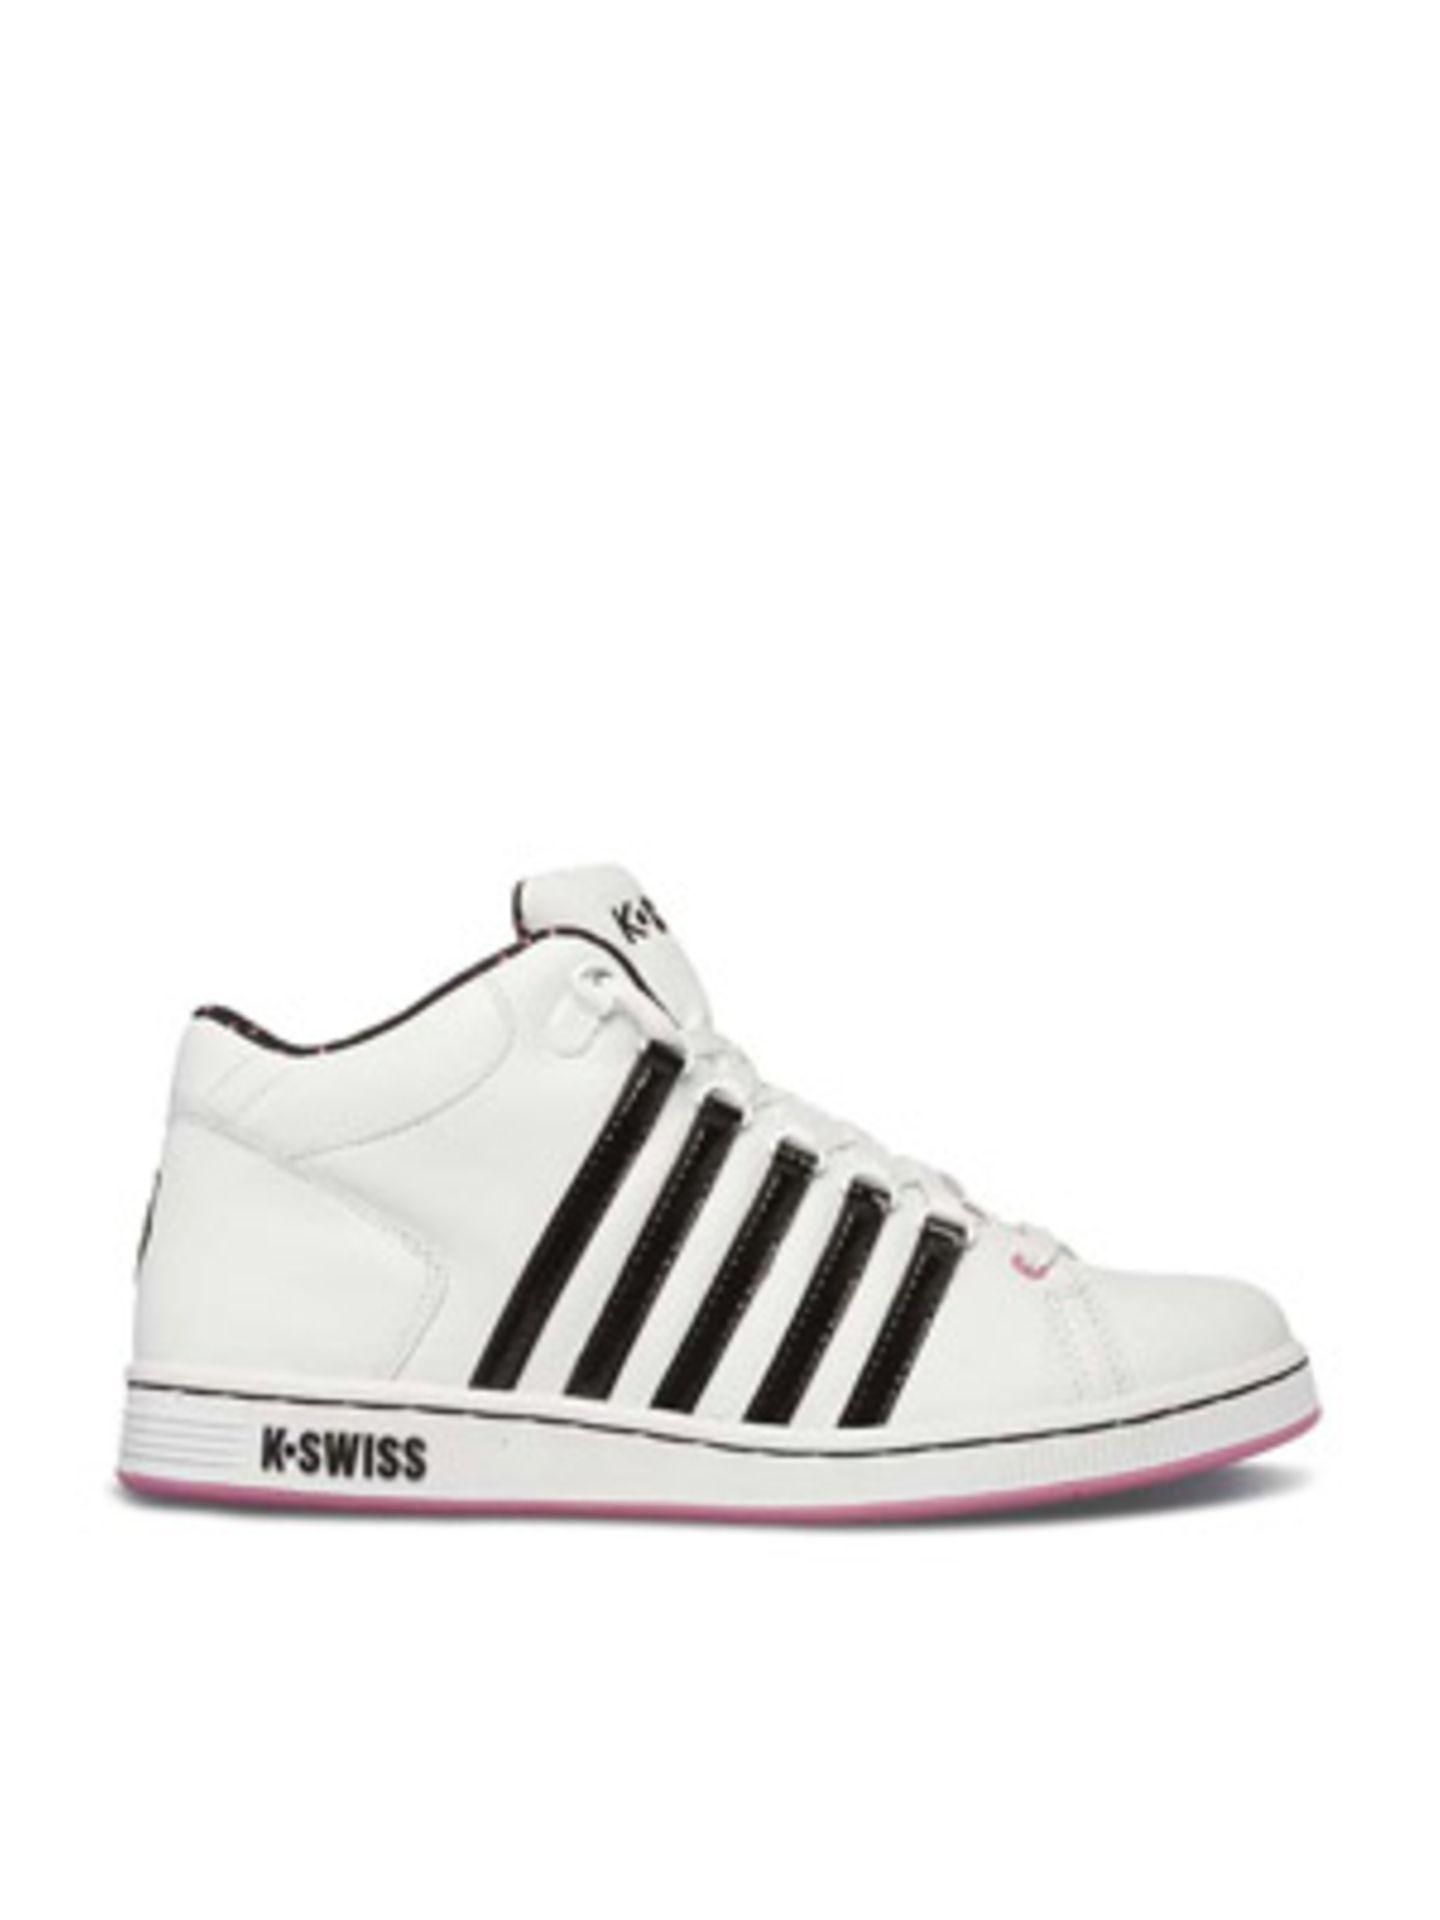 Halbhoher Sneaker in Weiß mit schwarzen Ziernähten von K SWISS, um 90 Euro.